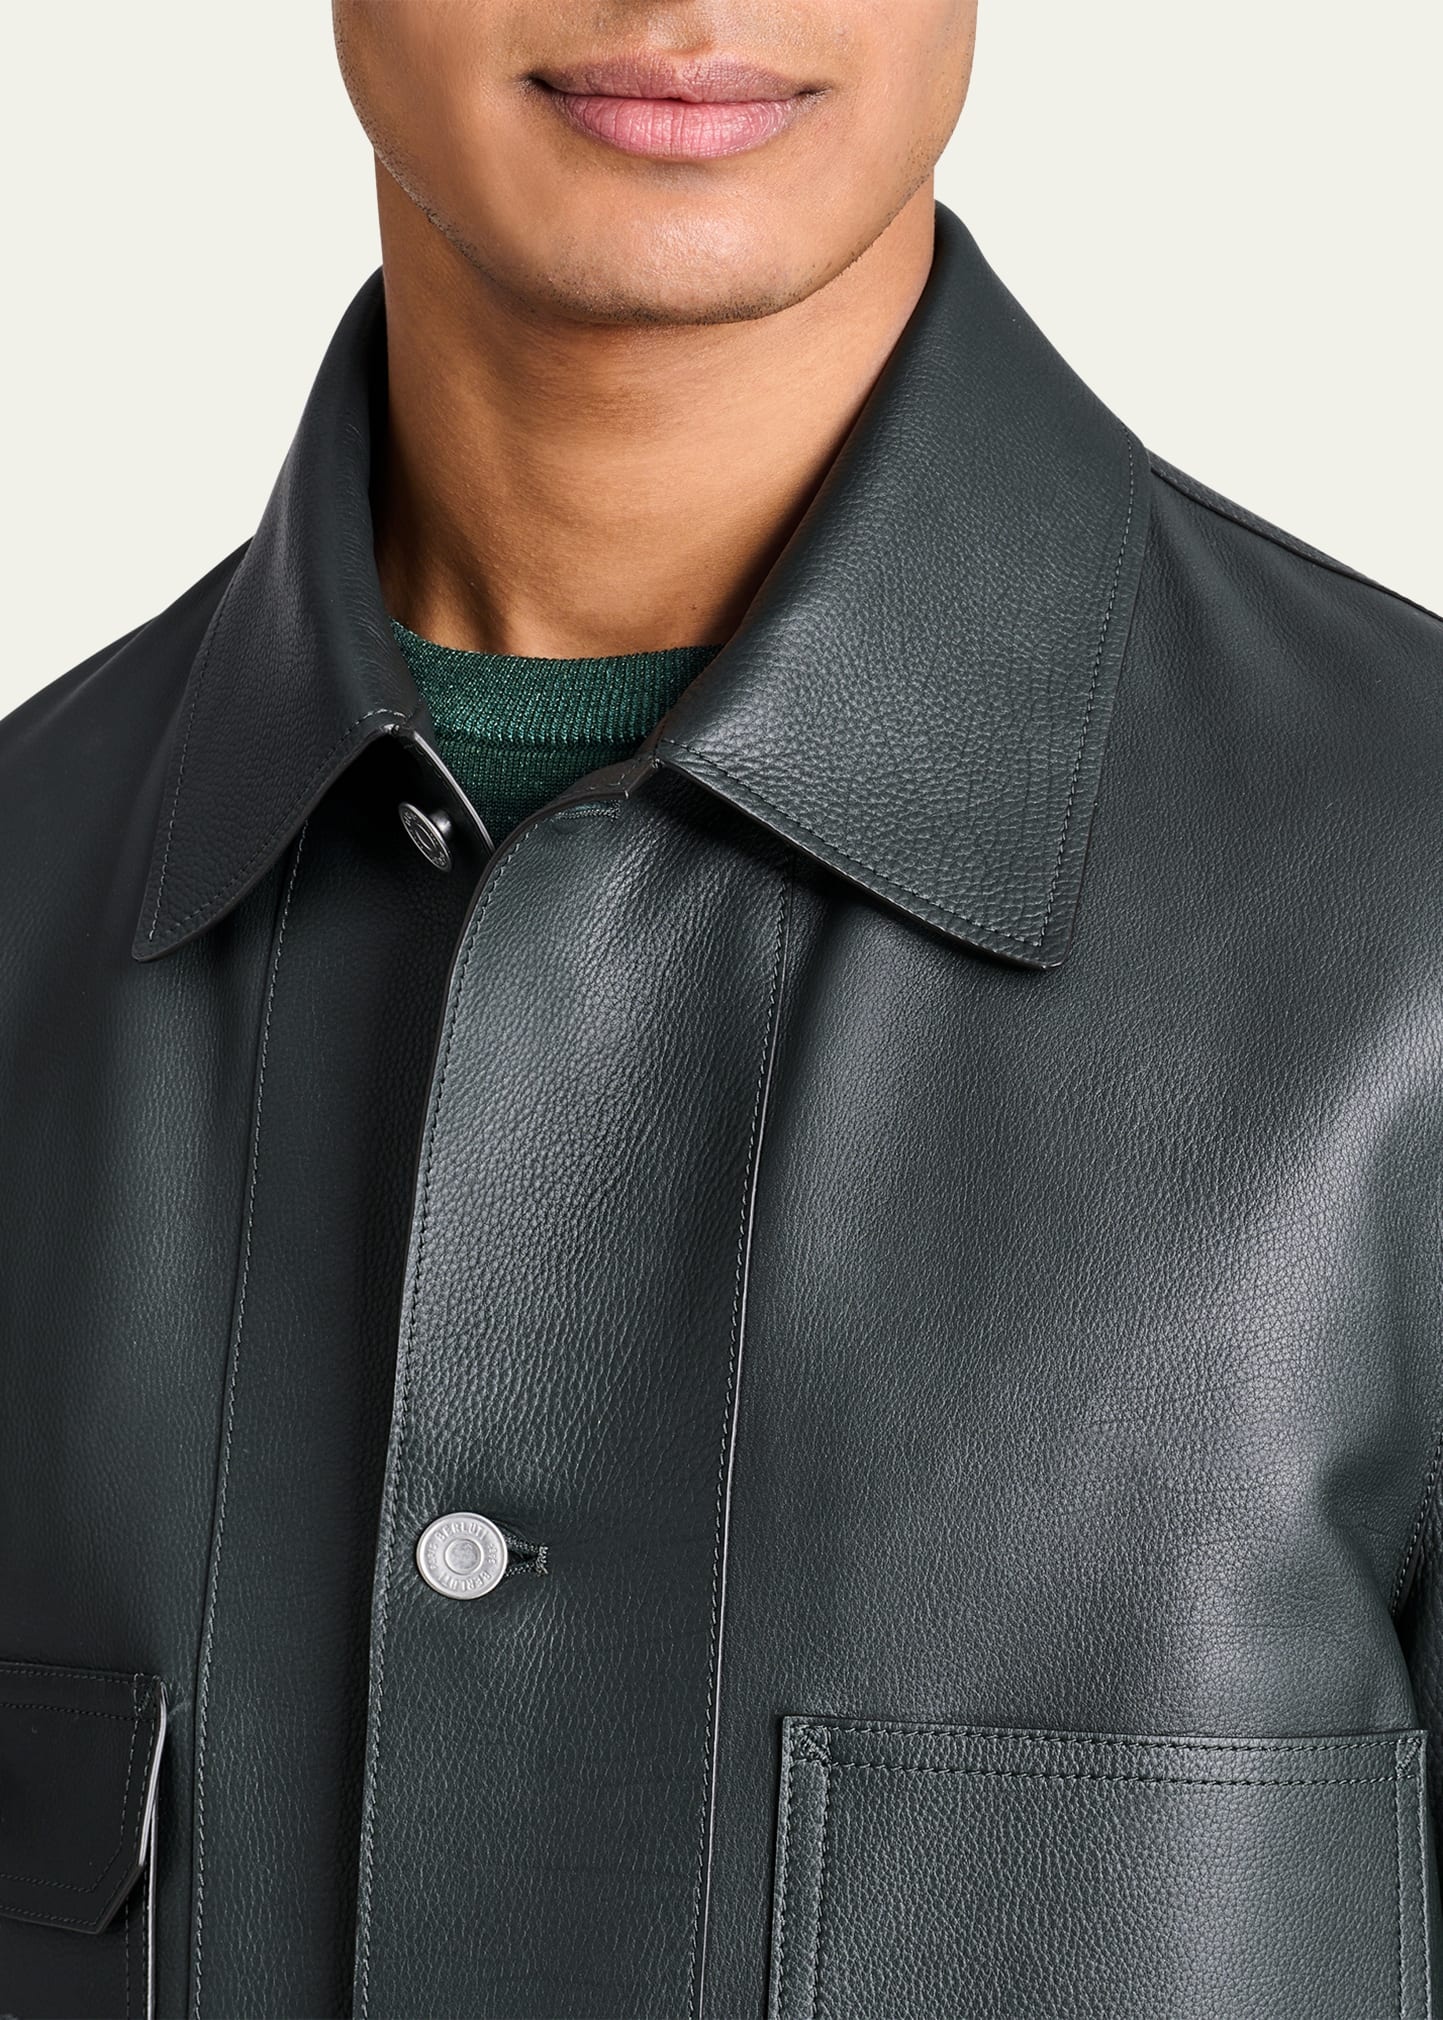 Men's Leather 4-Pocket Chore Jacket - 5